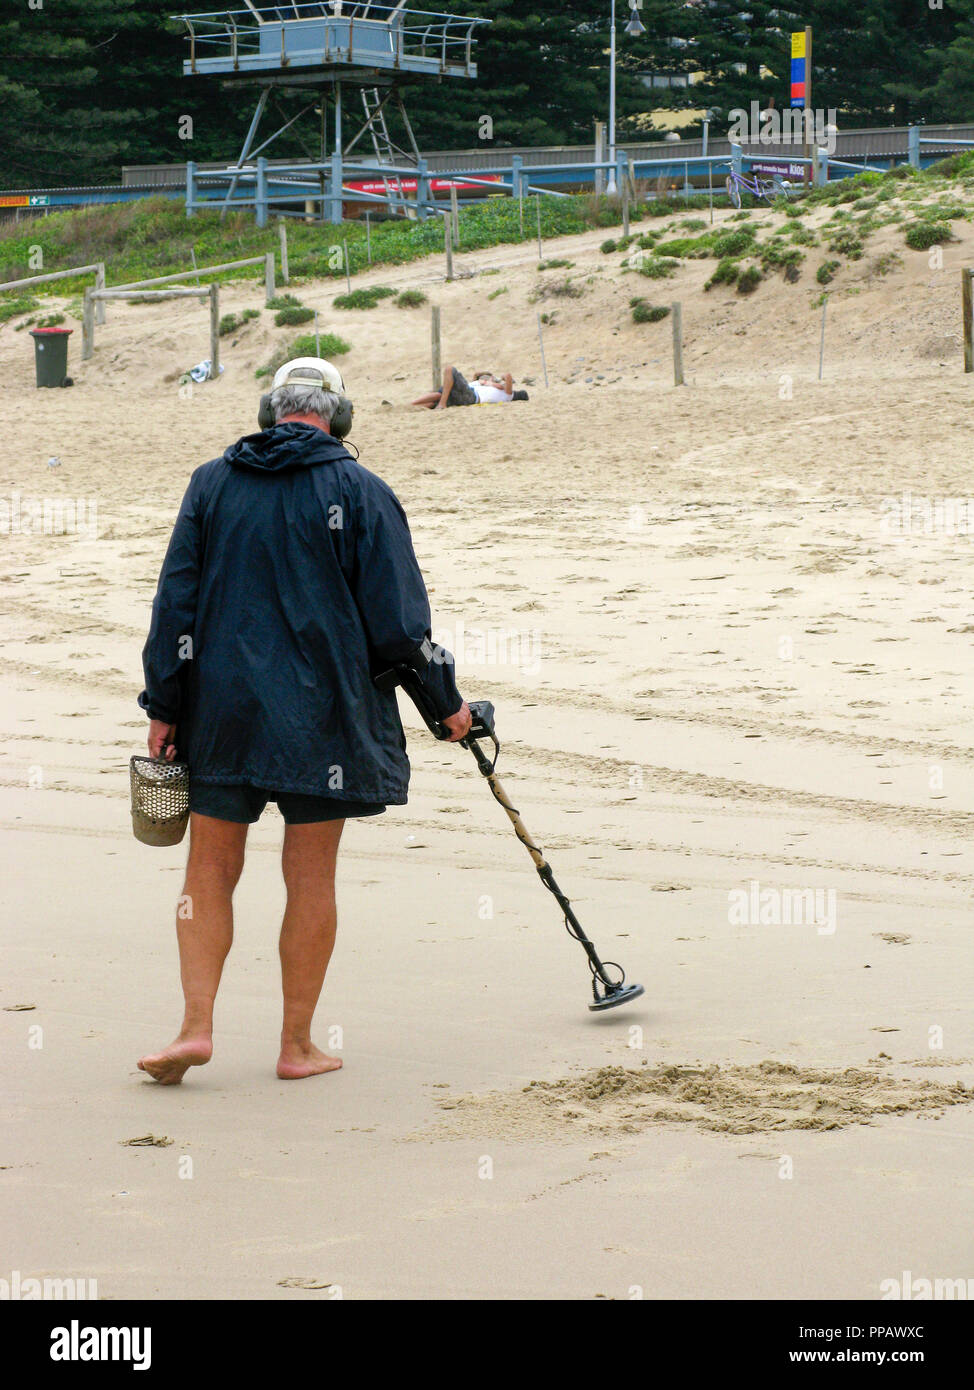 Homme avec détecteur de métal t'une plage à l'extérieur de Sydney Australie, recherche d'objets métalliques cachés Banque D'Images